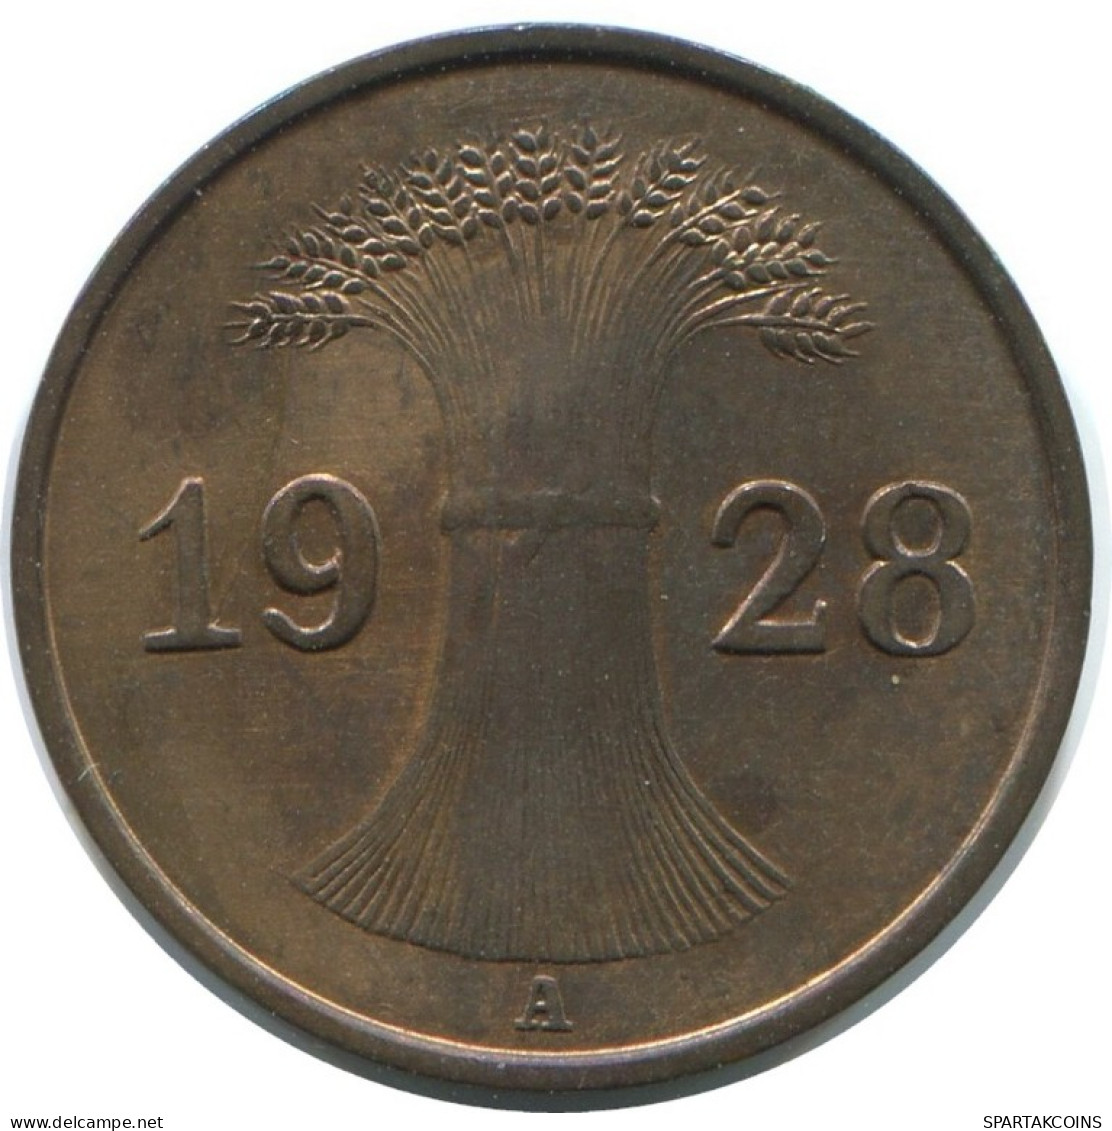 1 REICHSPFENNIG 1928 A ALEMANIA Moneda GERMANY #AE231.E.A - 1 Rentenpfennig & 1 Reichspfennig